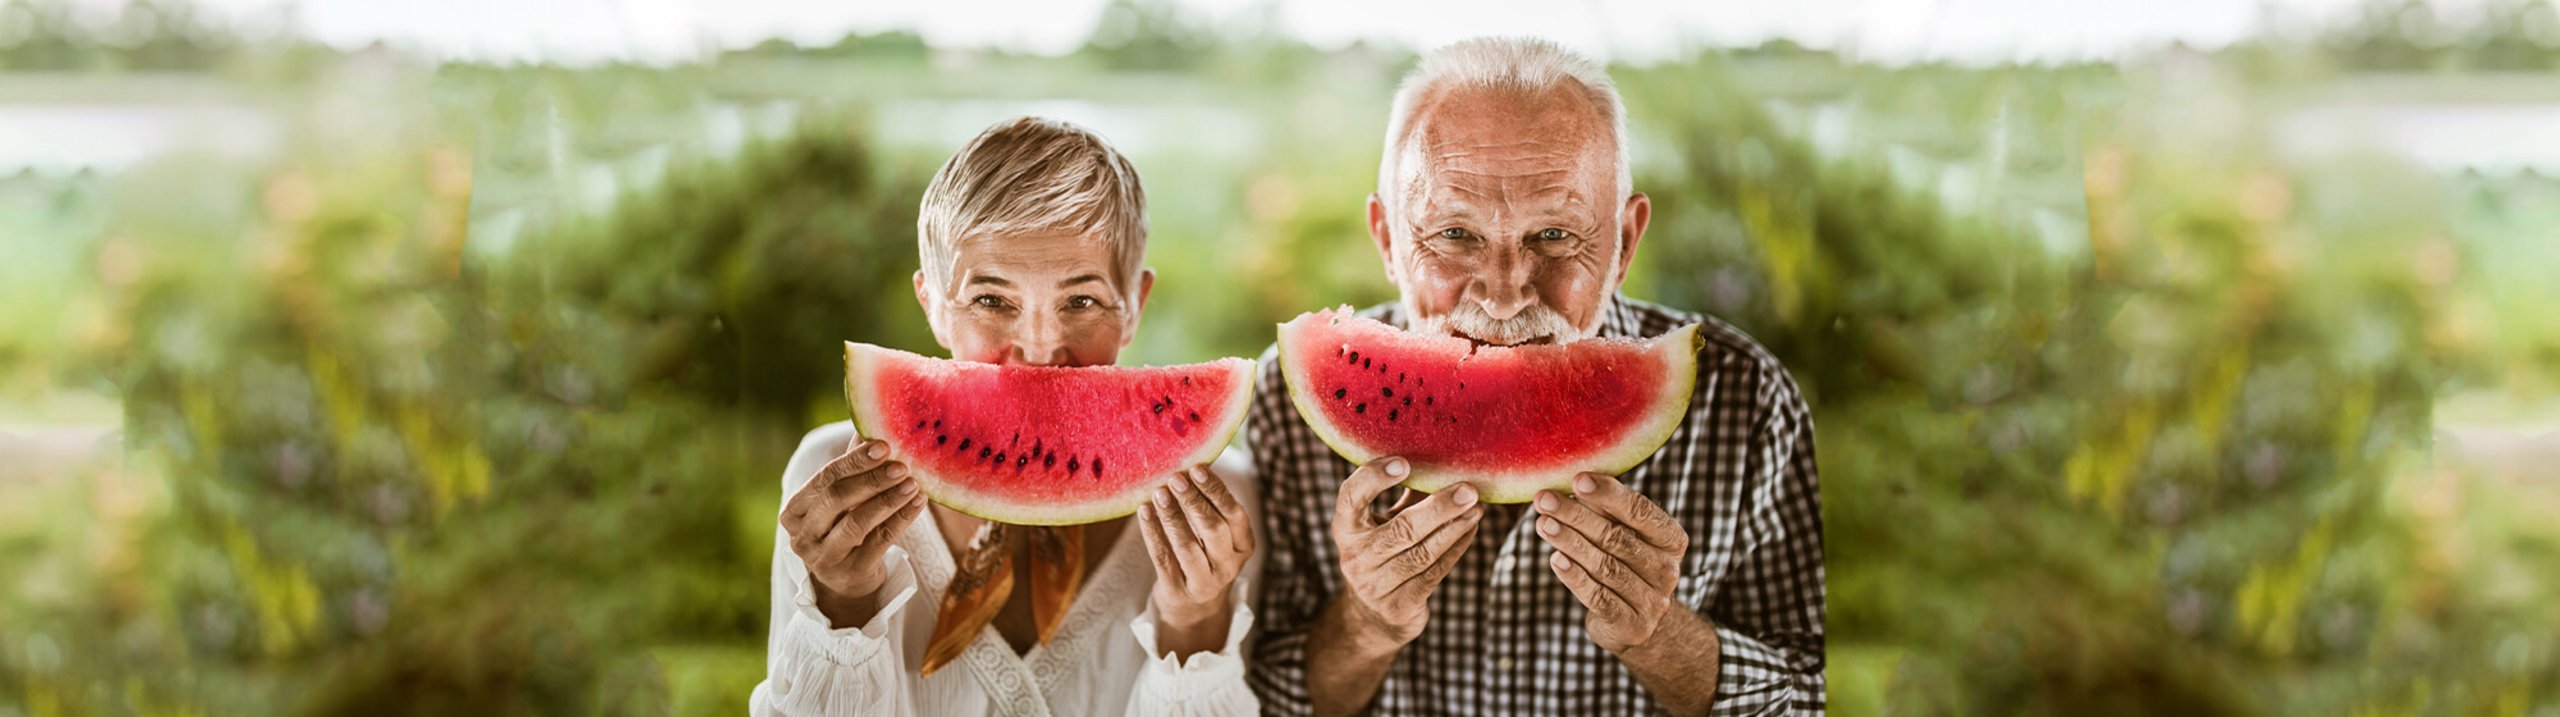 Foto von einem älterem Ehepaar beim Essen einer Wassermelone